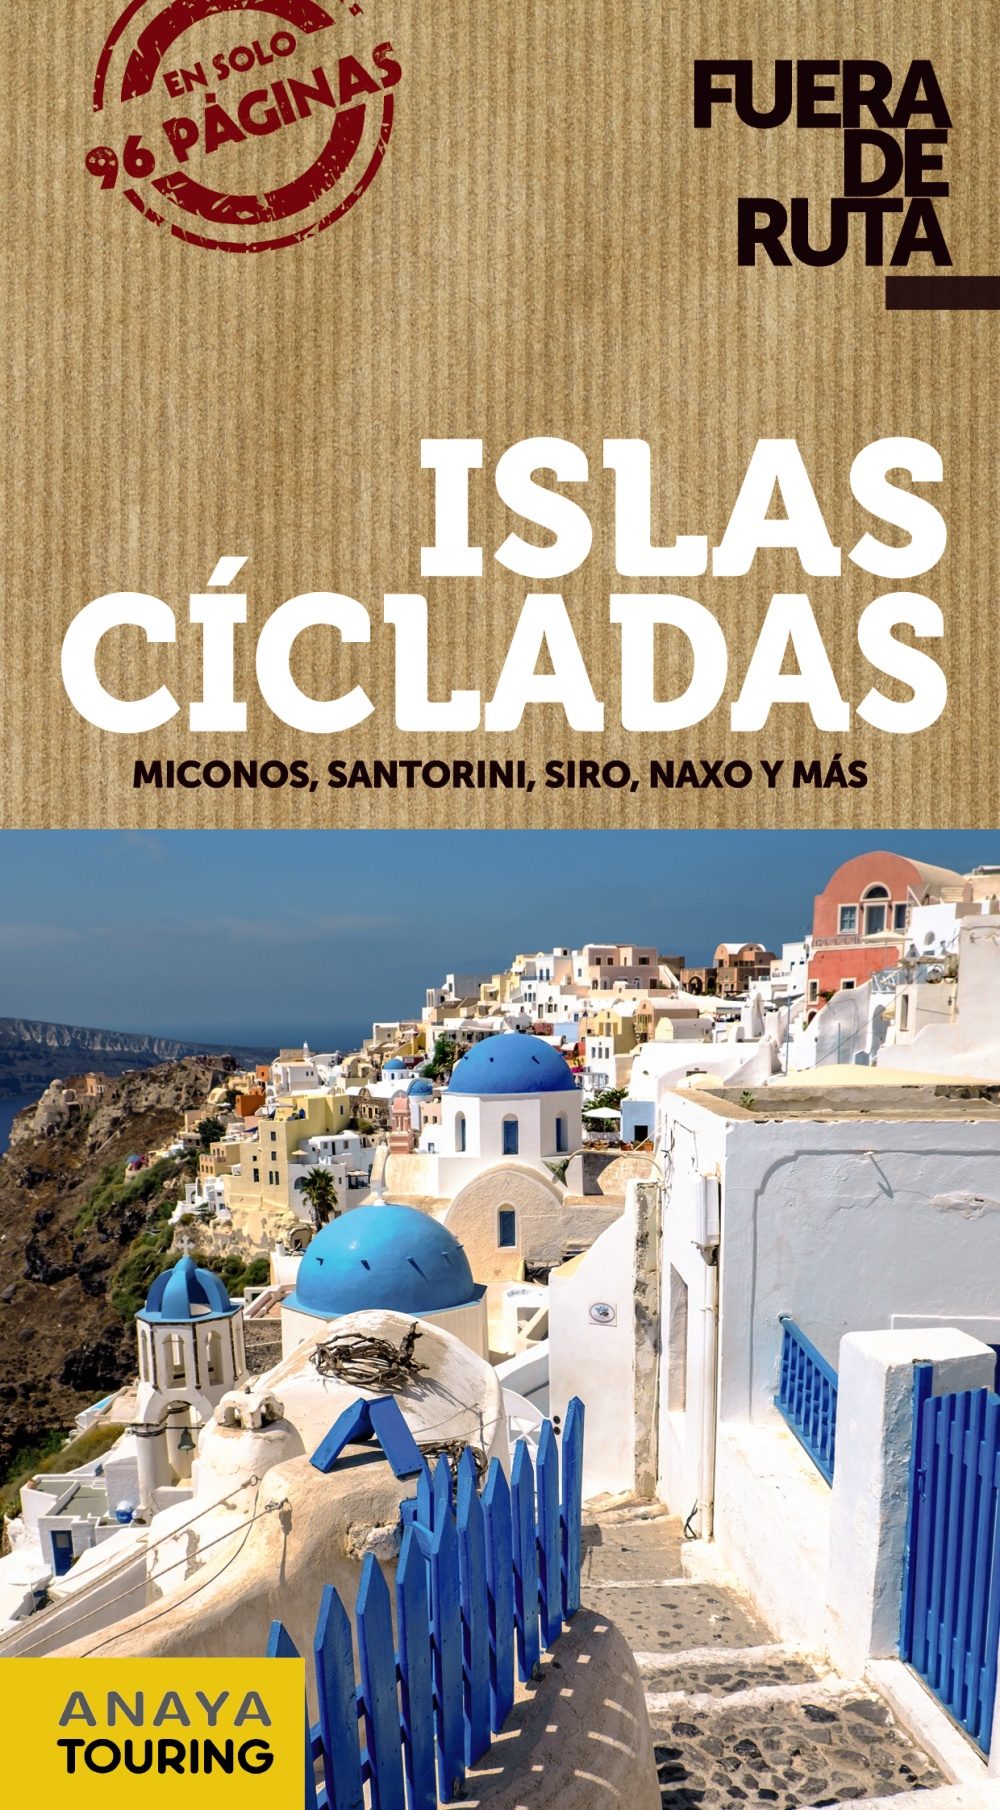 Islas Cicladas (Fuera de ruta). Miconos, Santorini, Siro, Naxo y más